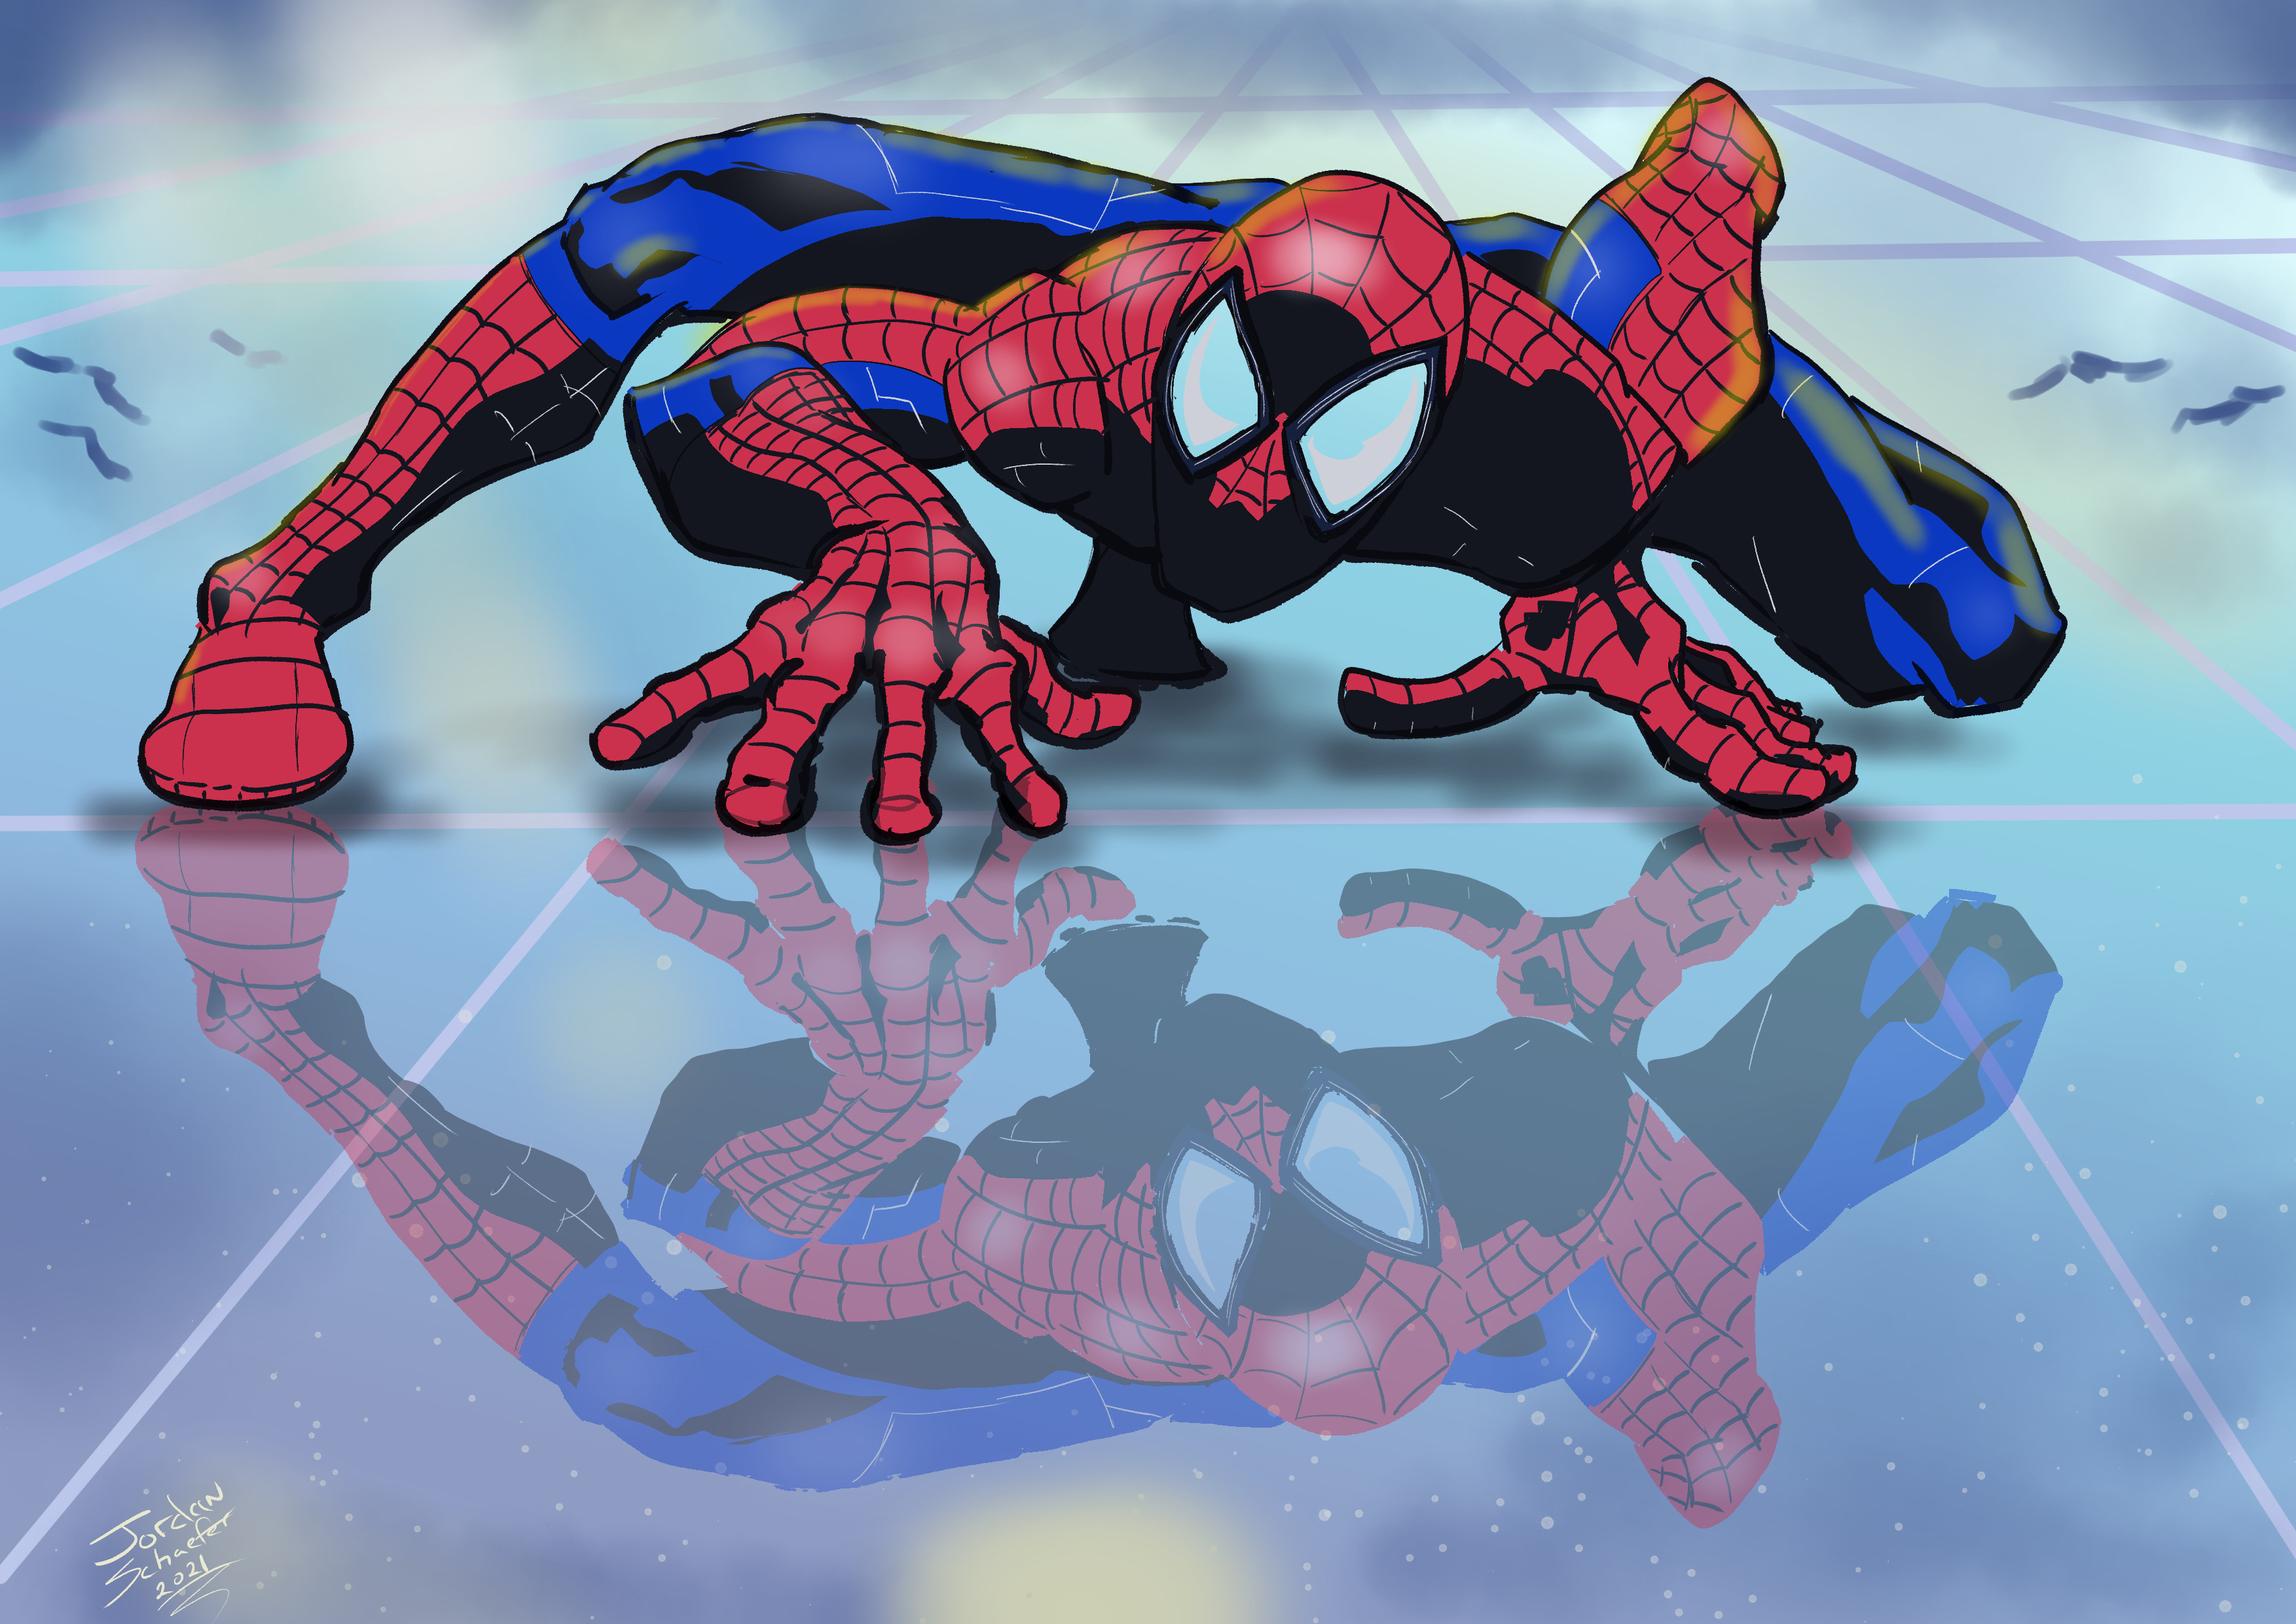 Spider-Man fan art by JordanSchaefer on DeviantArt